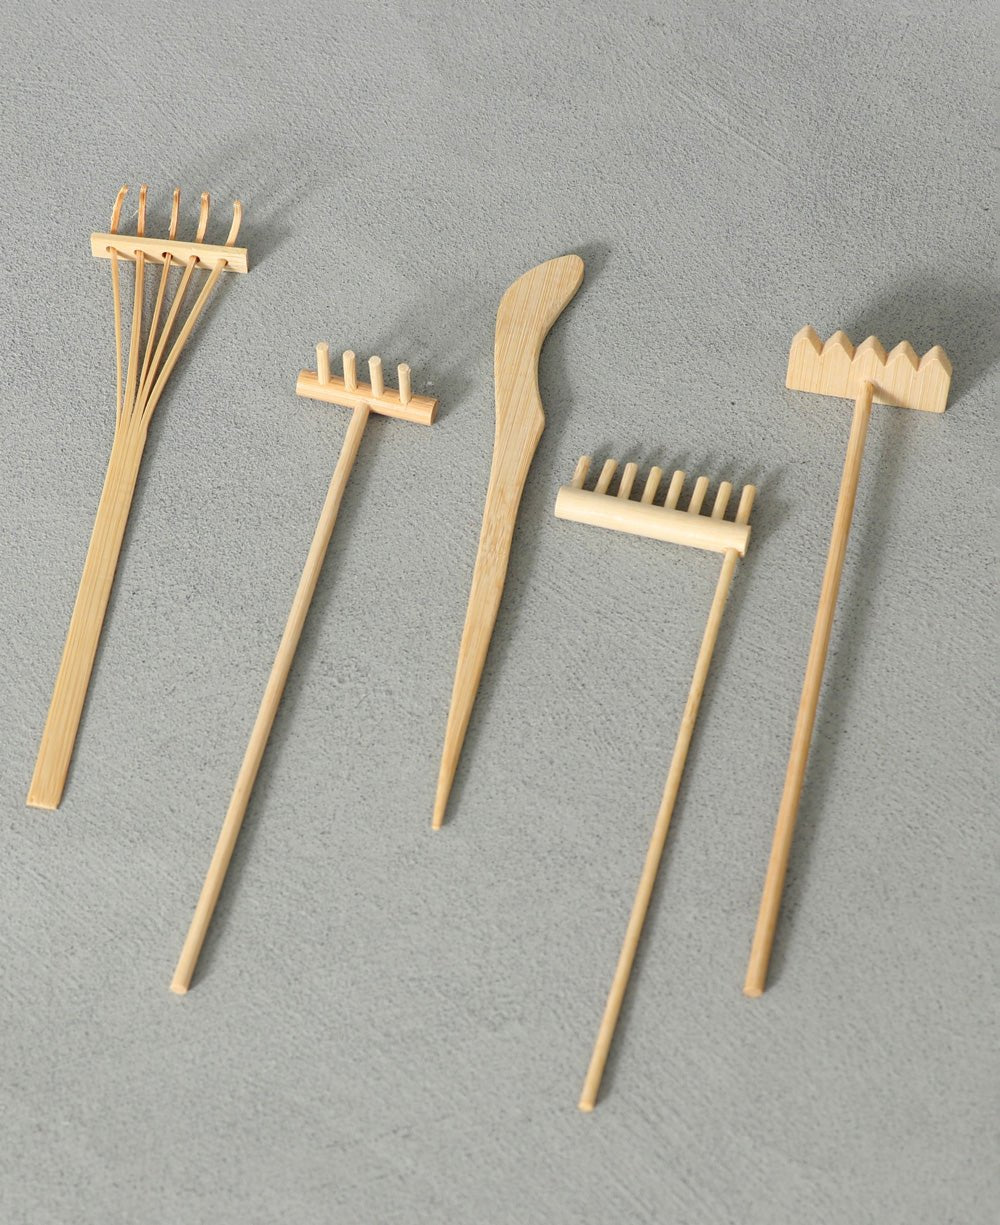 Set of 5 Bamboo Rakes for Desk Zen Garden - Home & Garden